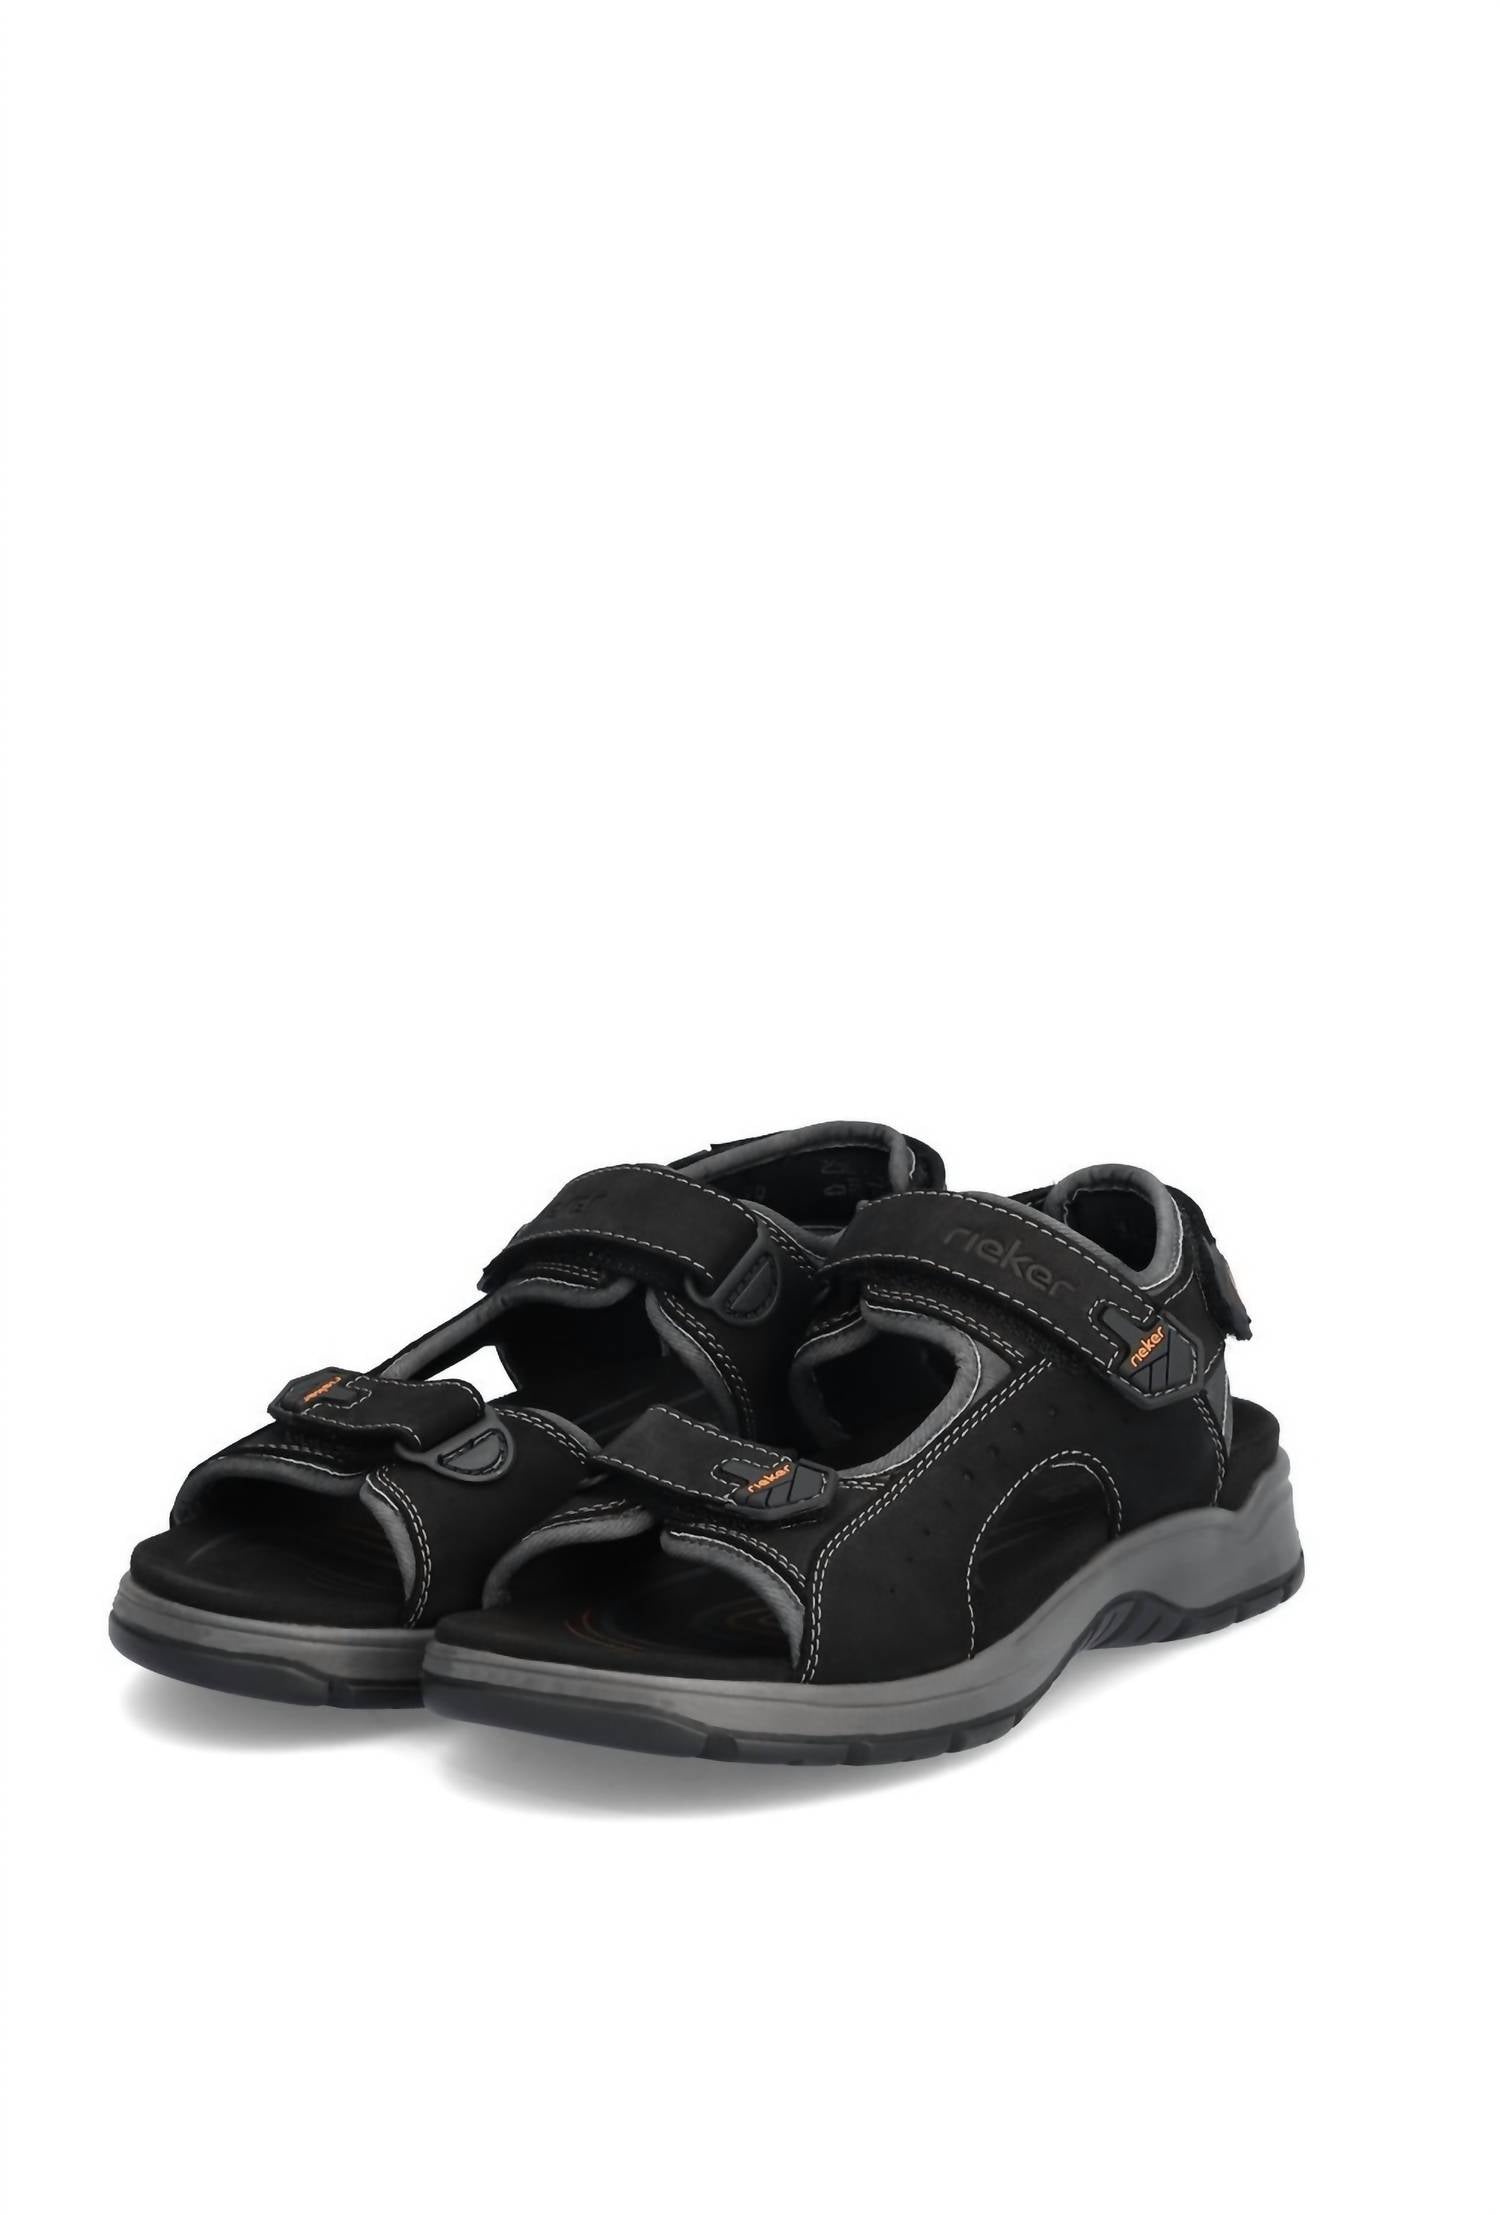 Rieker Men's Trekking Sandals In Black